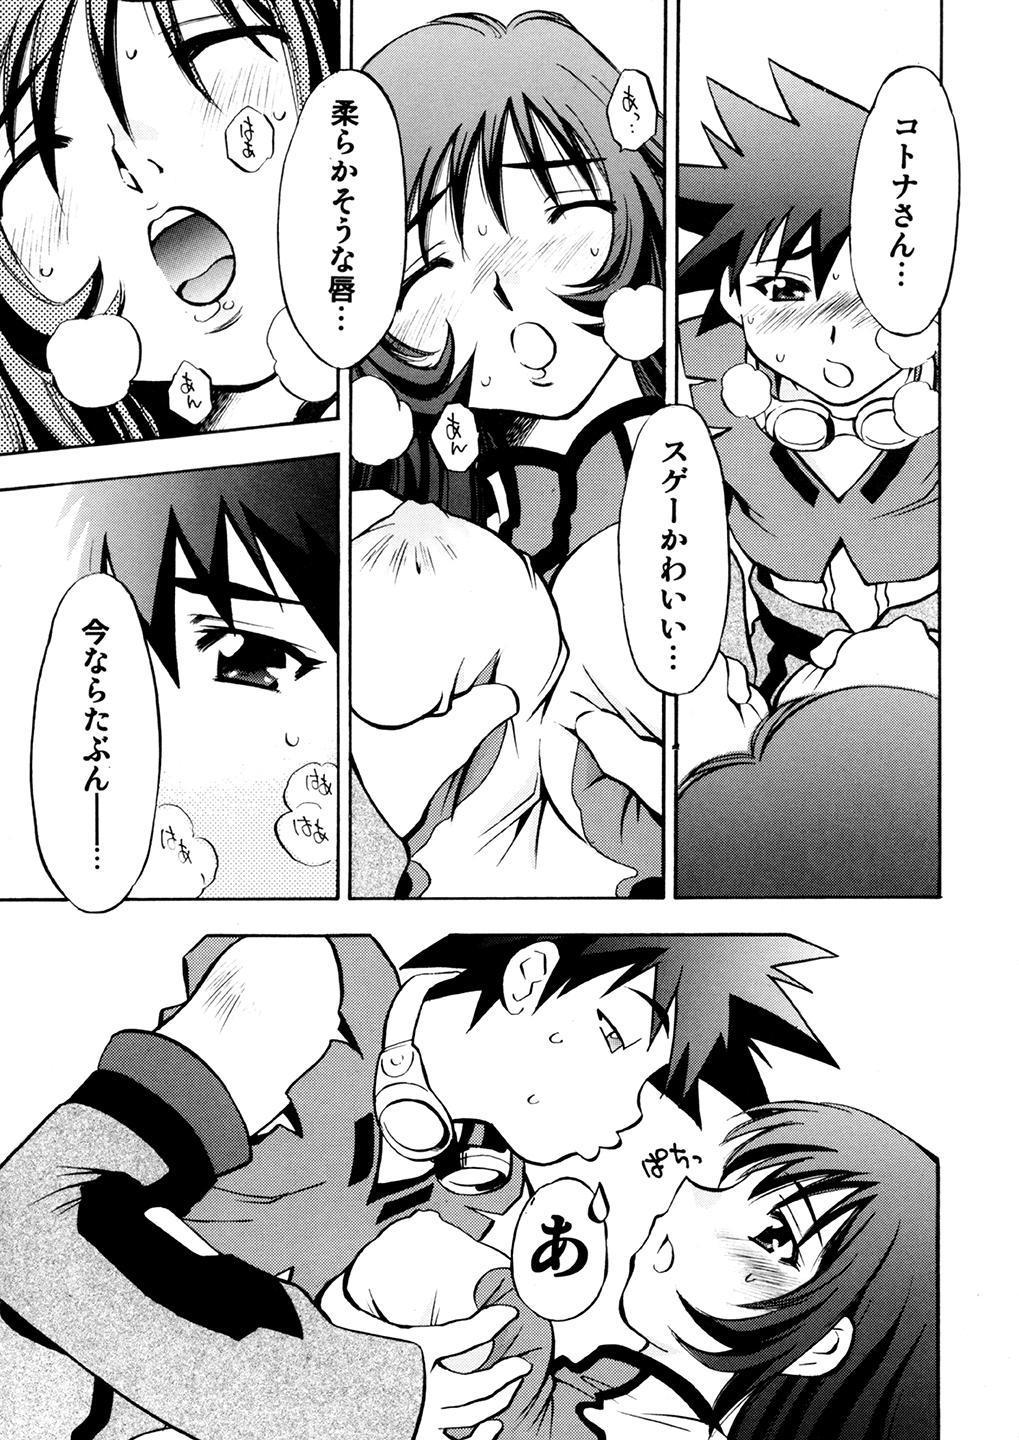 Parties Kotona & Rei Mii - Zoids genesis Petite Teenager - Page 6